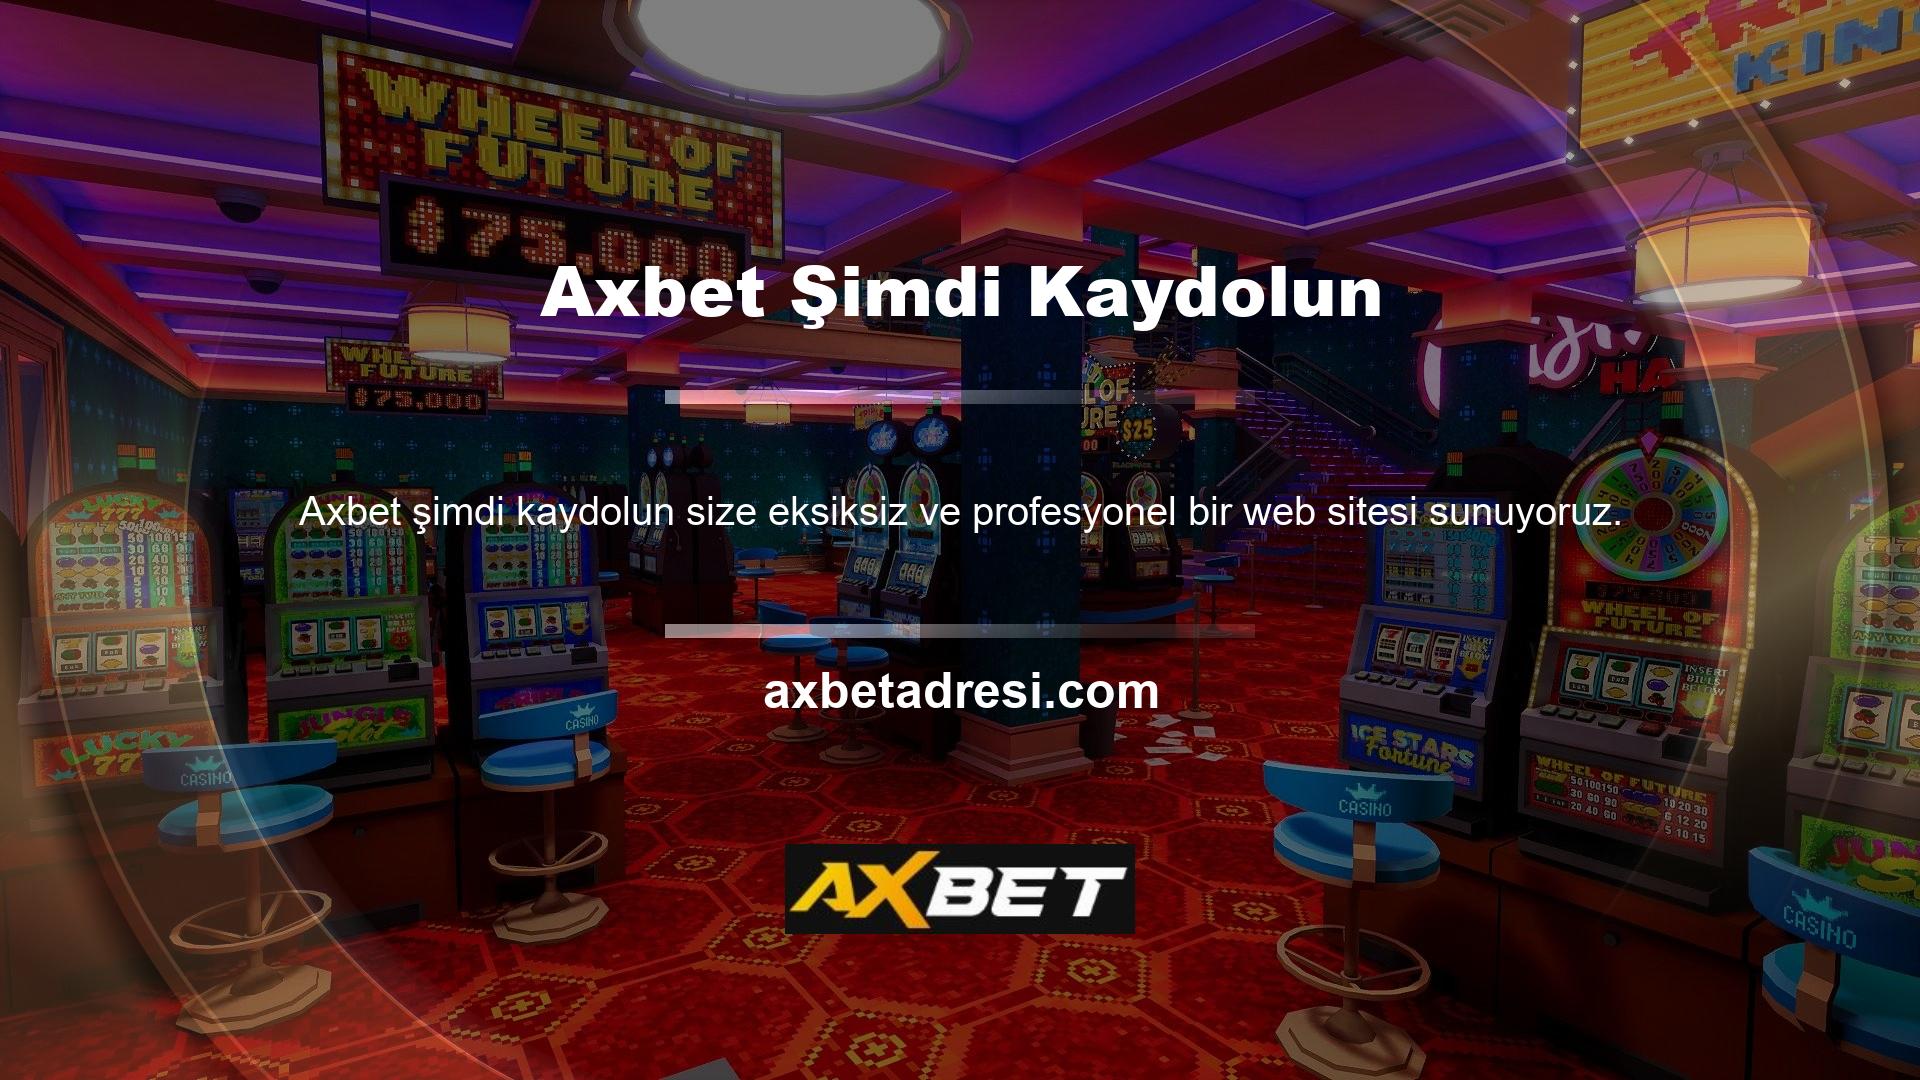 Diyelim ki yoğun bir günün ardından Axbet casino oyunlarını oynayarak biraz para kazanmak istiyorsunuz